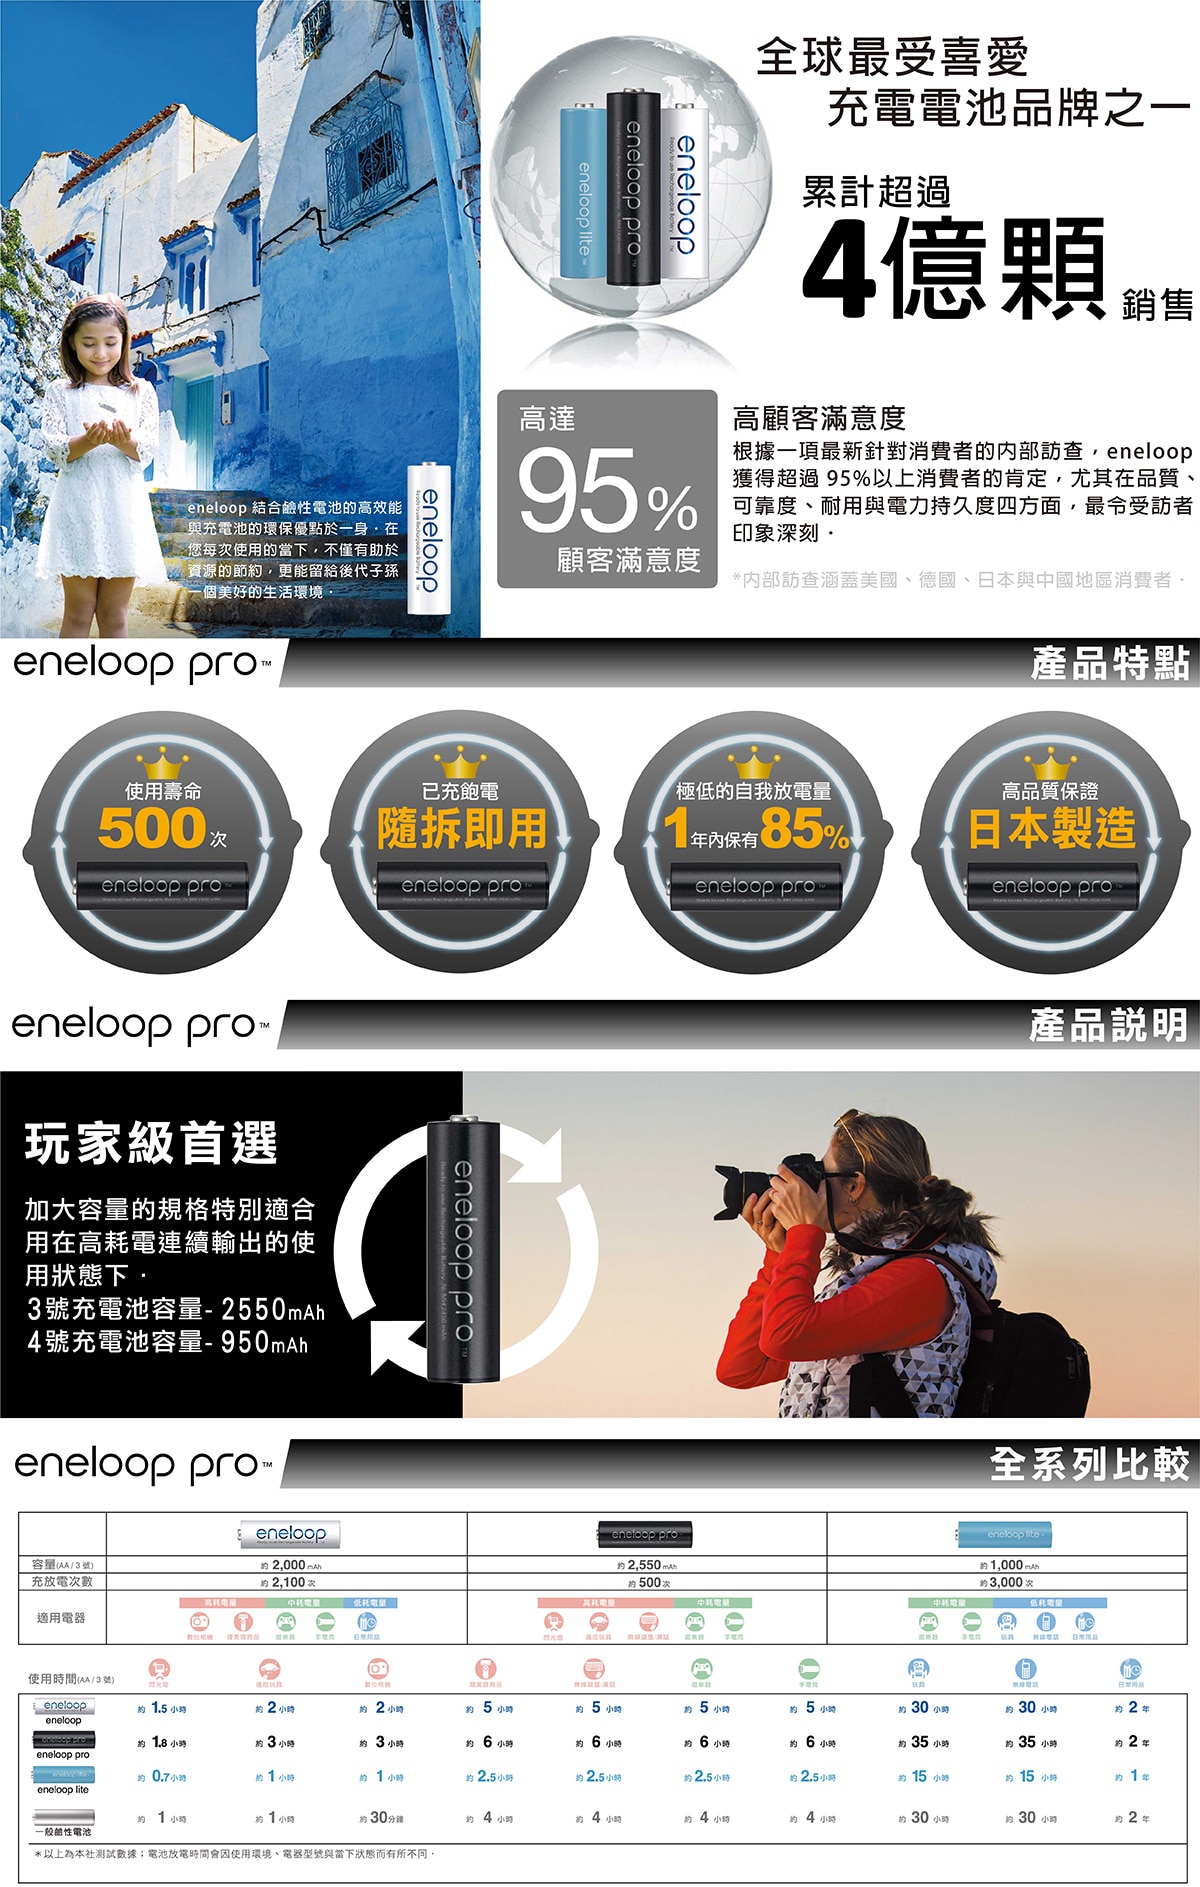 eneloop Pro 充電電池組,使用壽命500次,已充飽電 隨拆即用,極低的自我放電量 1年內保有85%,高品質保證,日本製造。